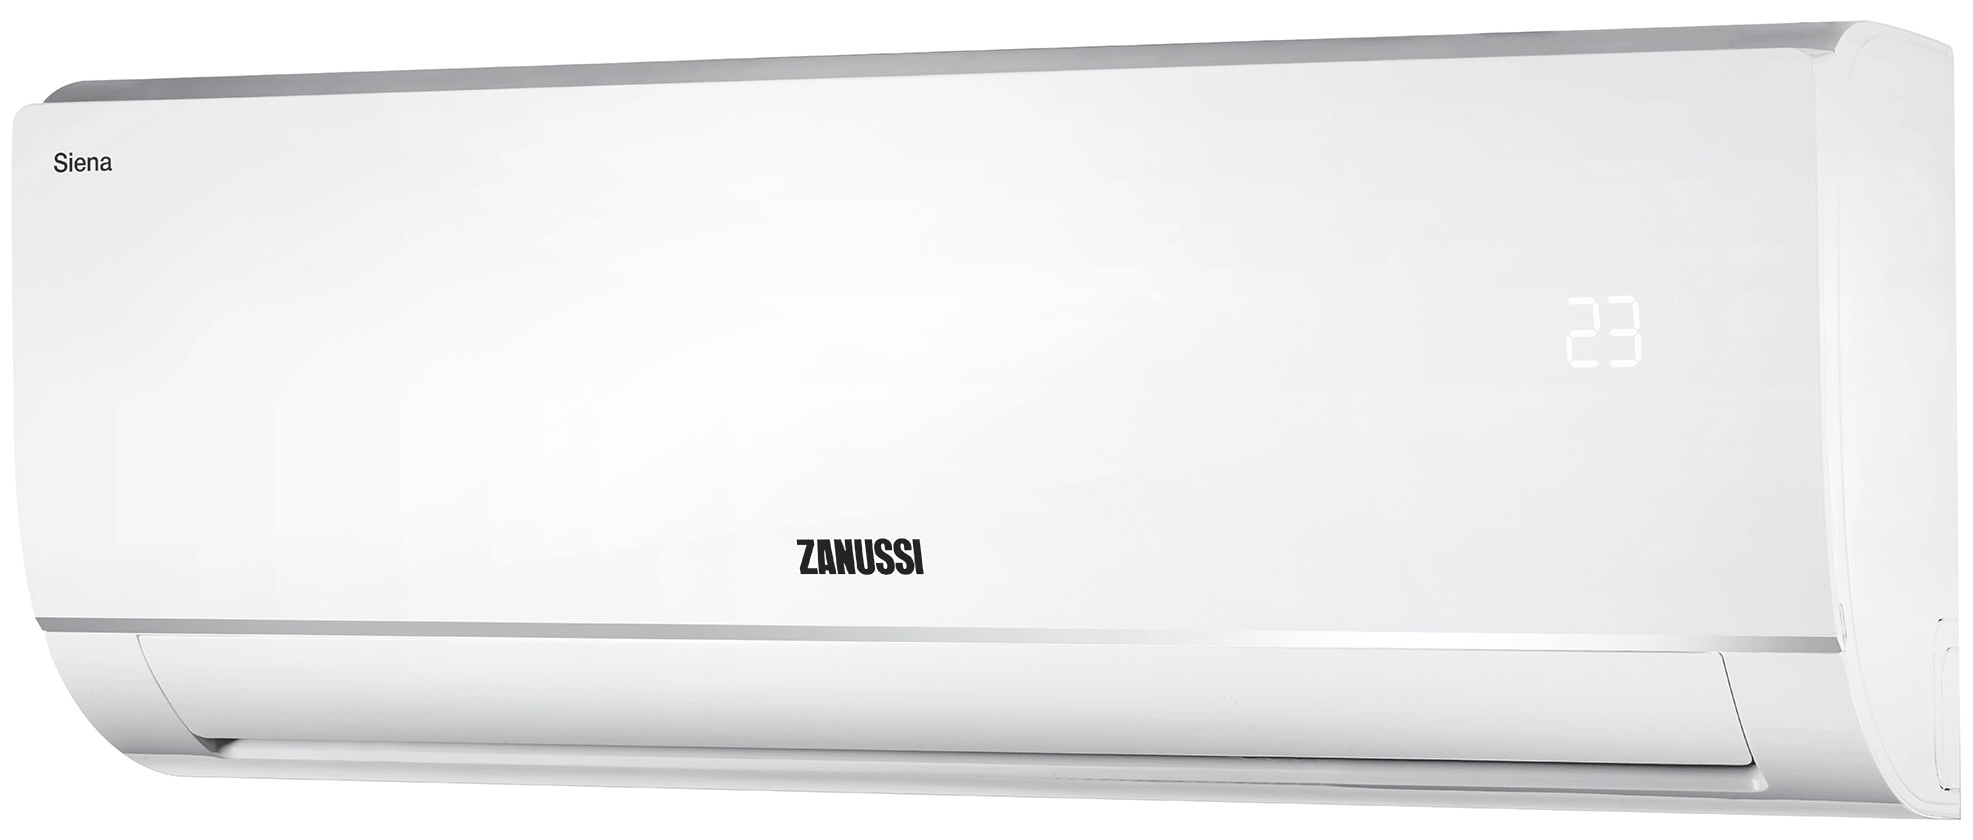 Кондиціонер спліт-система Zanussi Siena ZACS-12 HS/A21/N1 відгуки - зображення 5